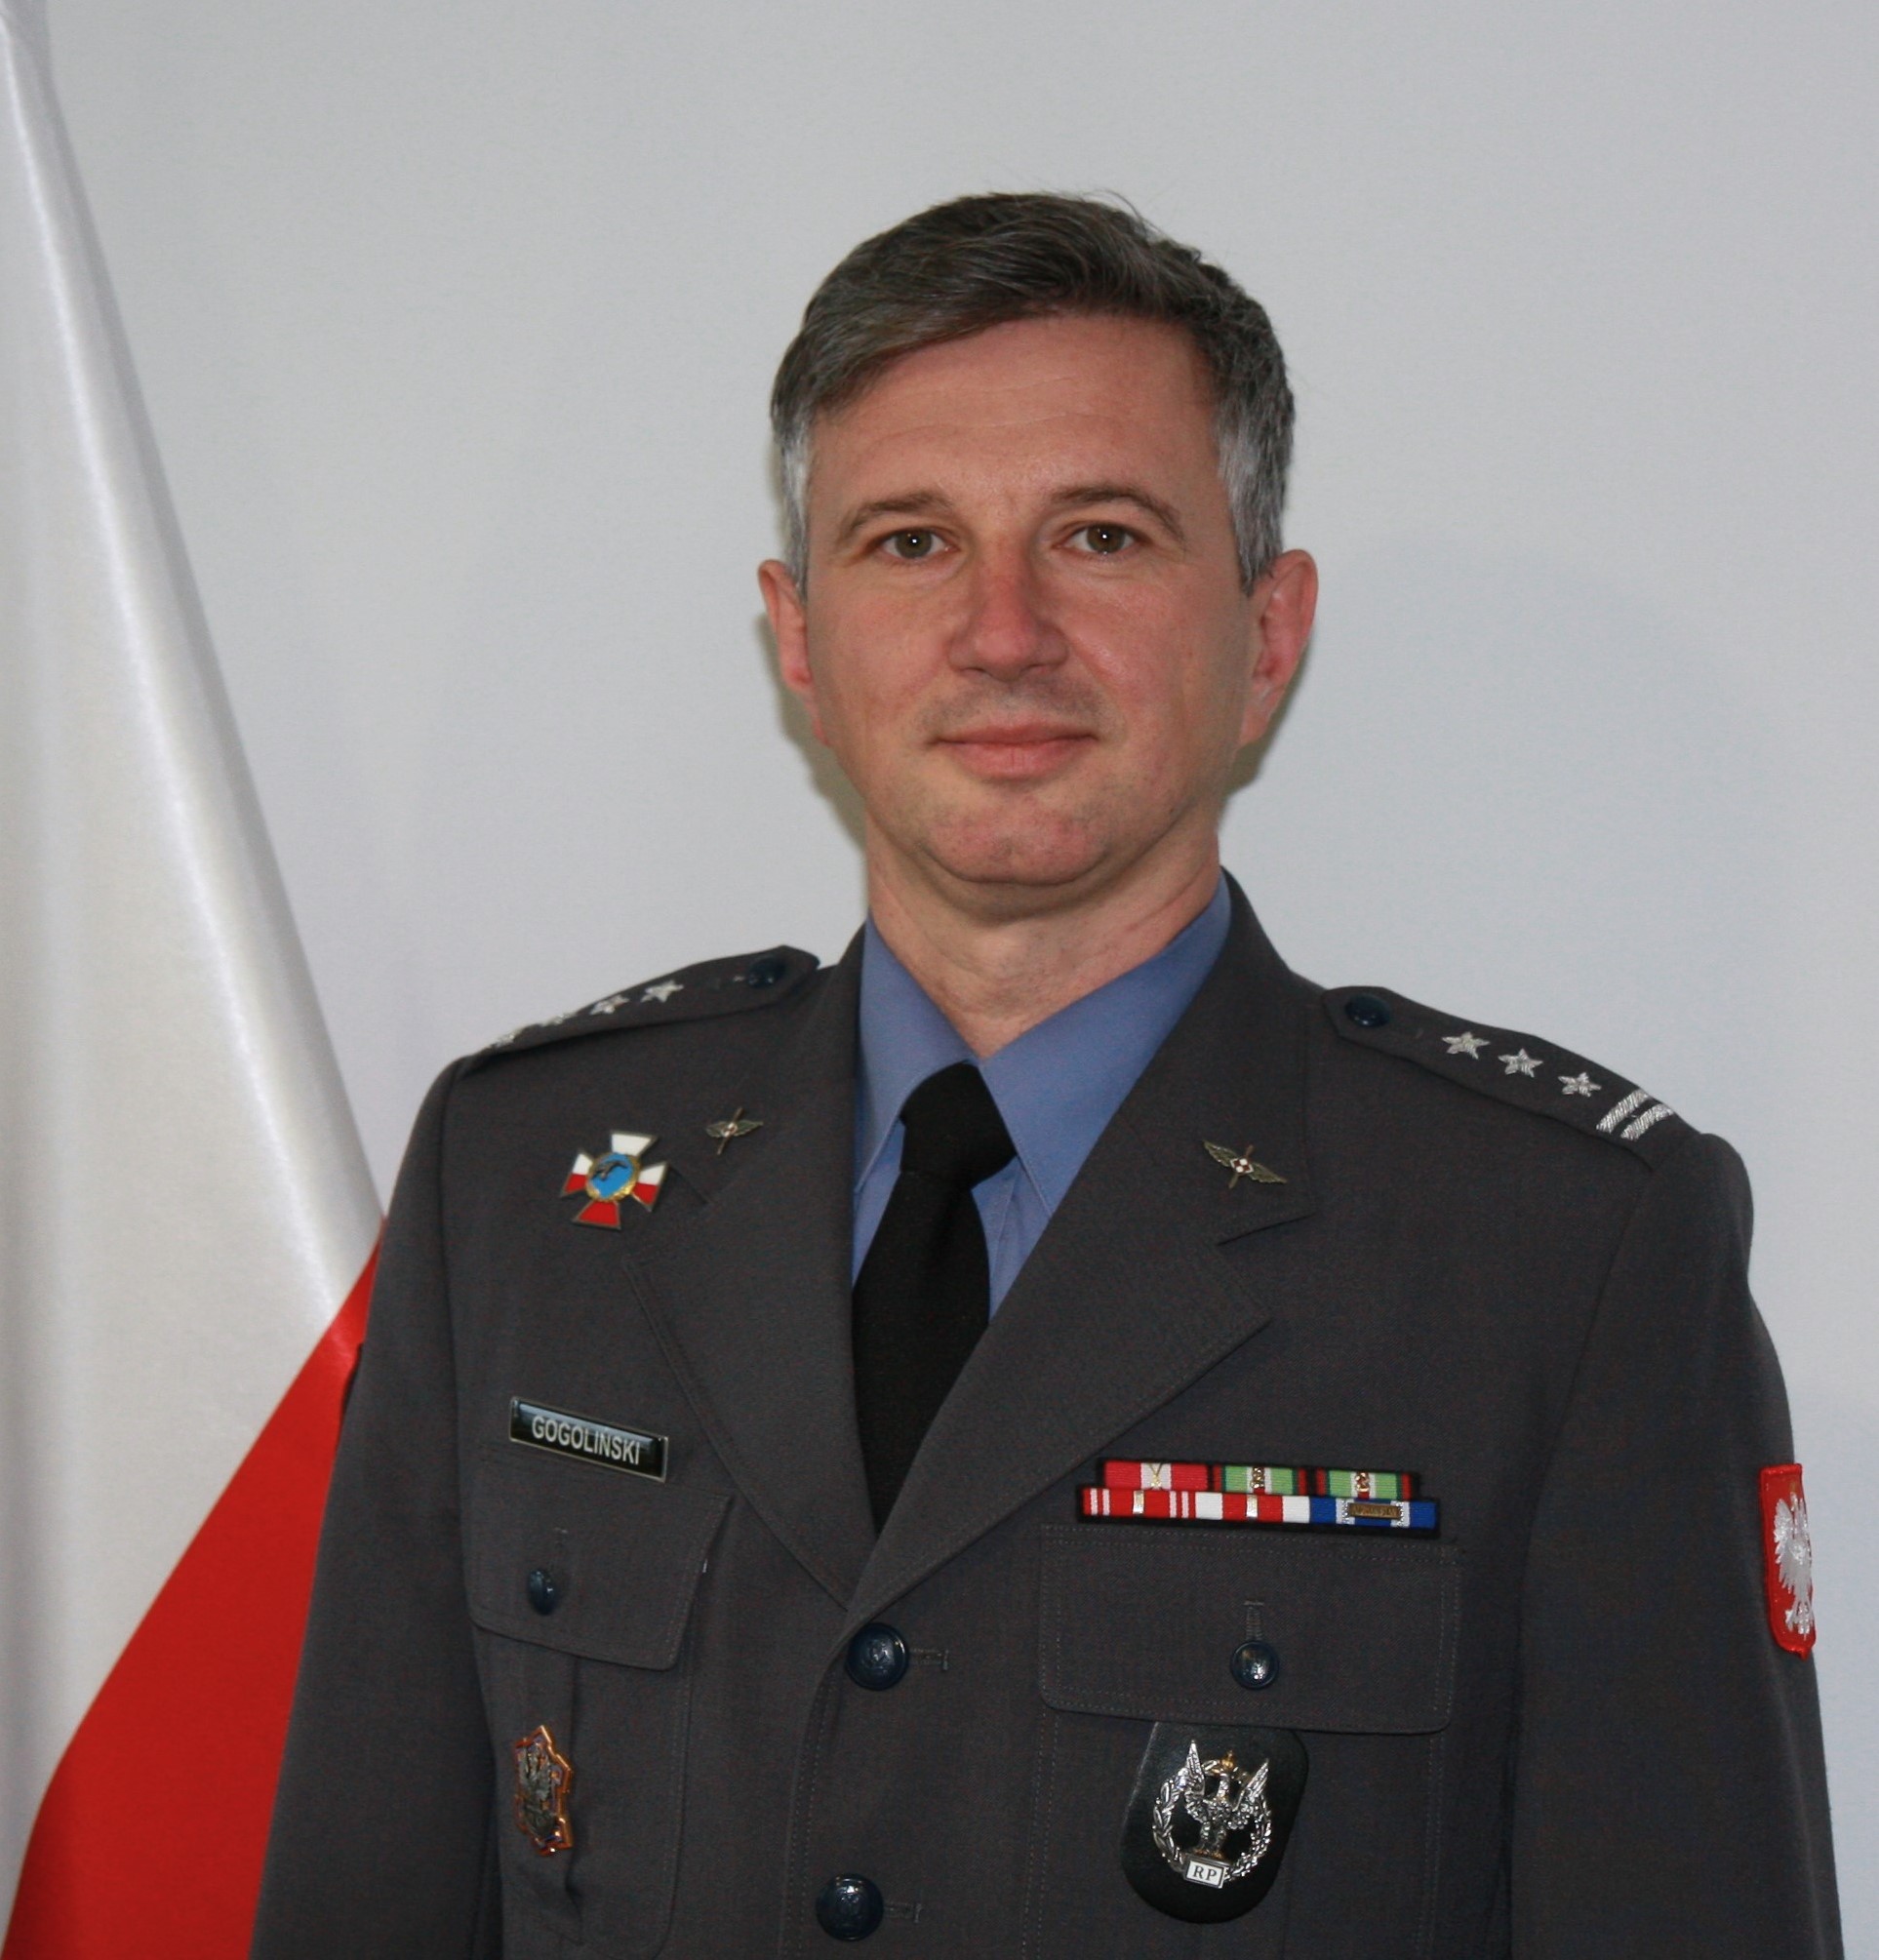 Vice President - płk Przemysław Gogoliński